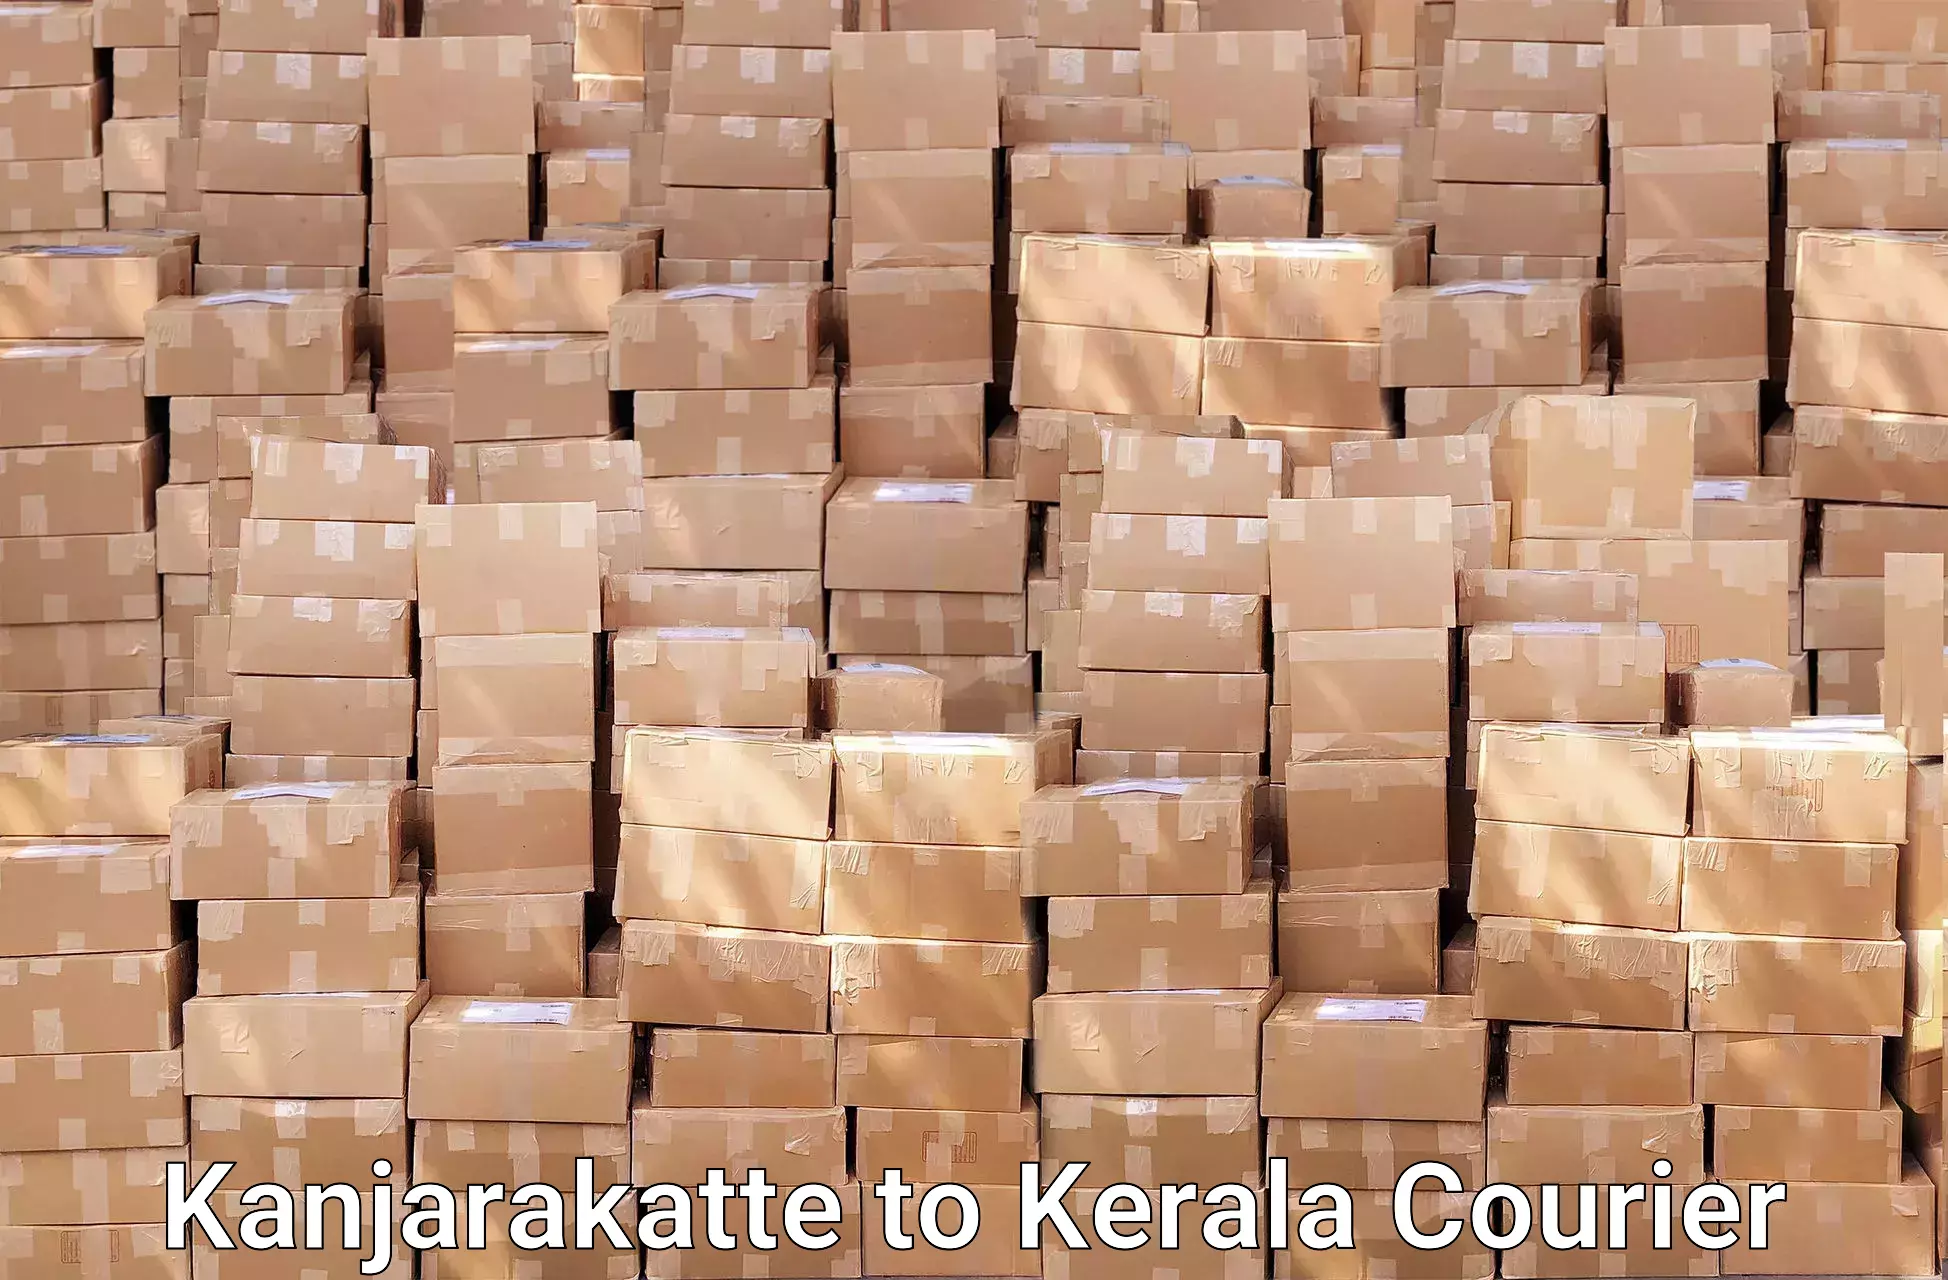 Trusted furniture transport Kanjarakatte to Kerala